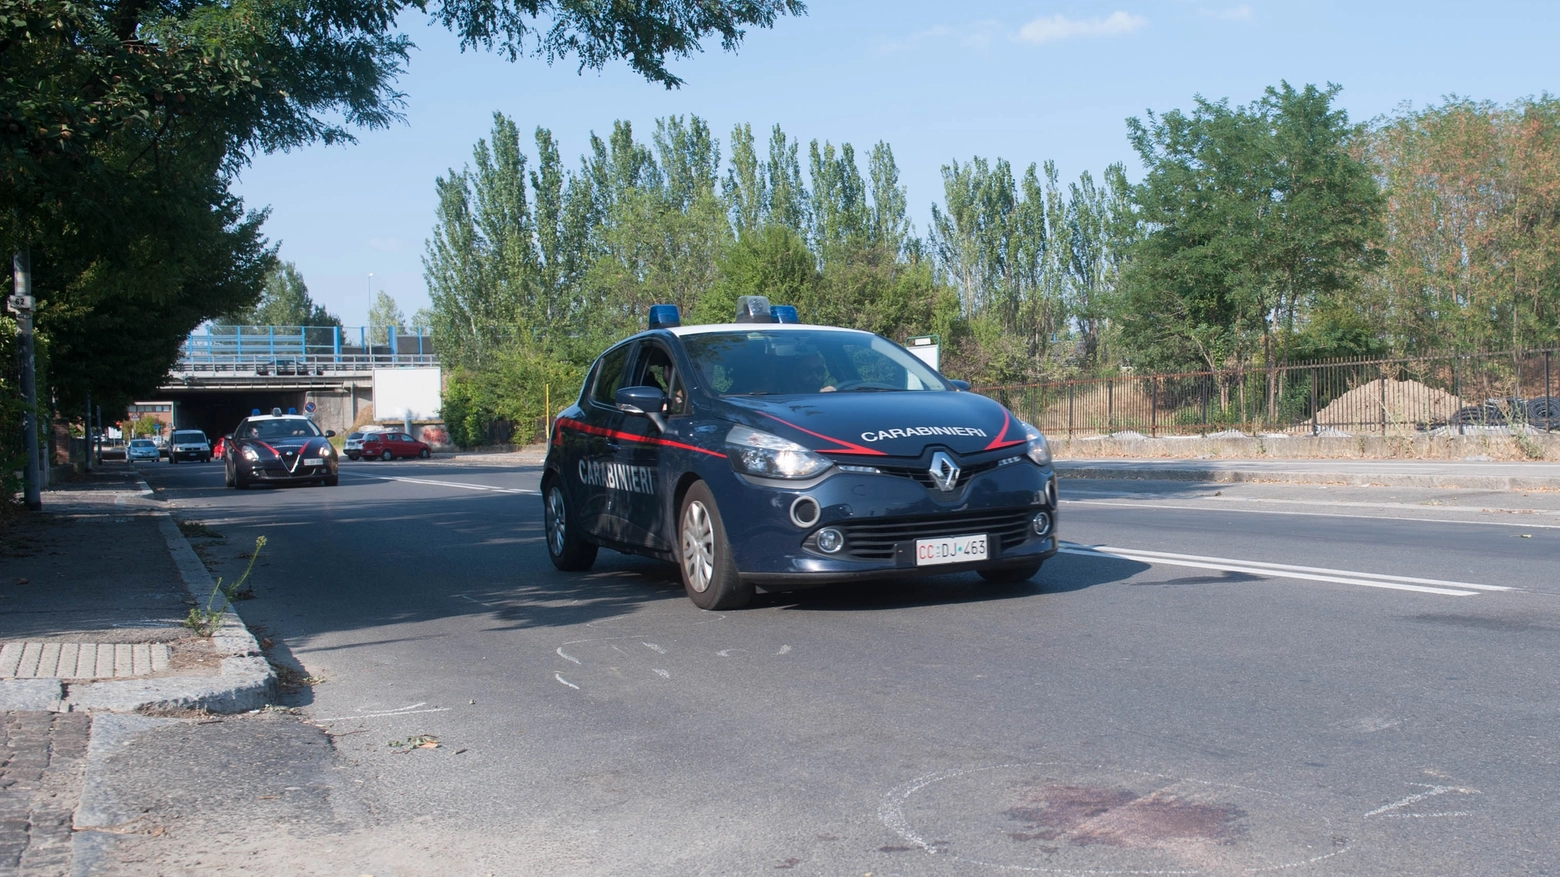 Carabinieri sul luogo dell'incidente (Foto Schicchi)